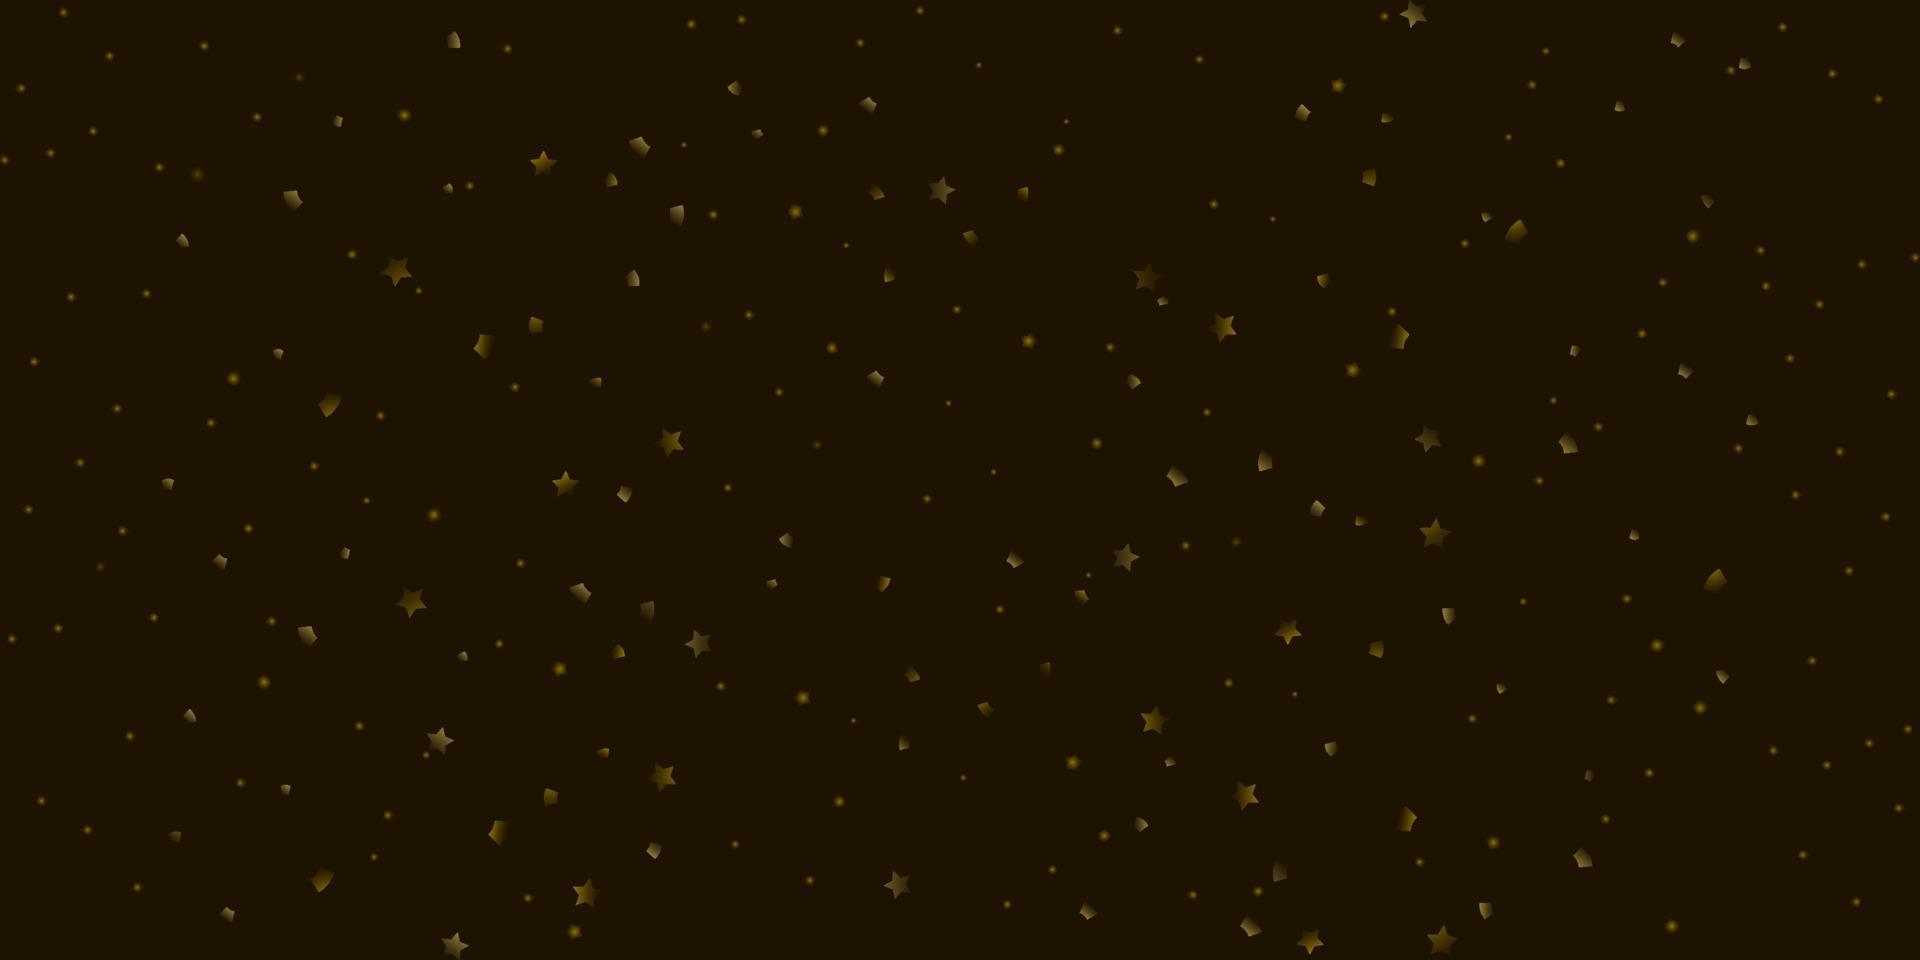 schwarzer hintergrund mit goldenem konfetti, sternen und punkten vektor